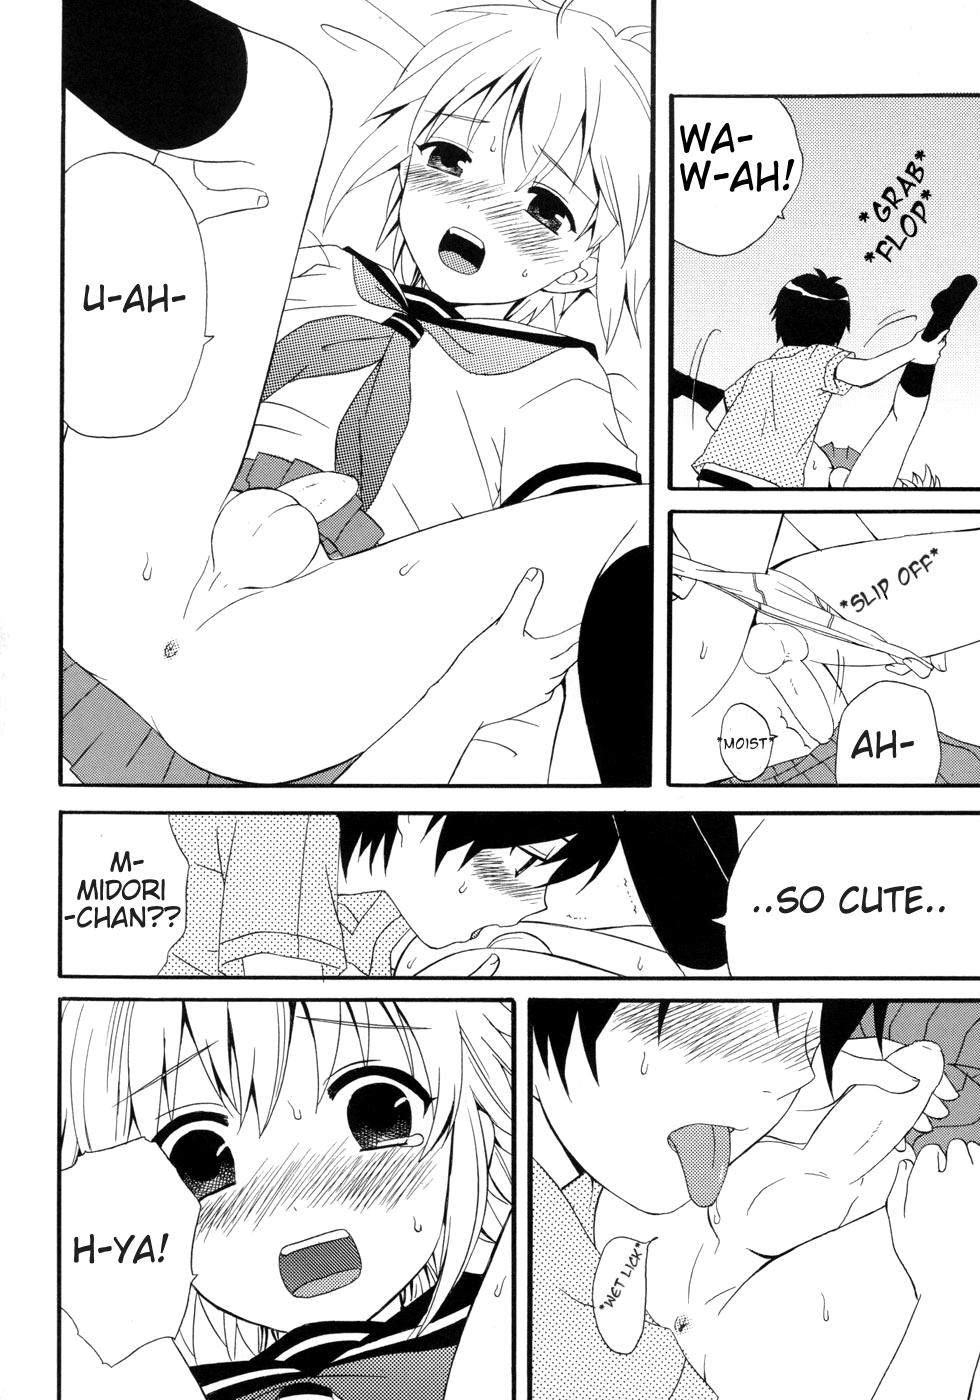 Amador Teach Me! Midori-chan! Chacal - Page 10